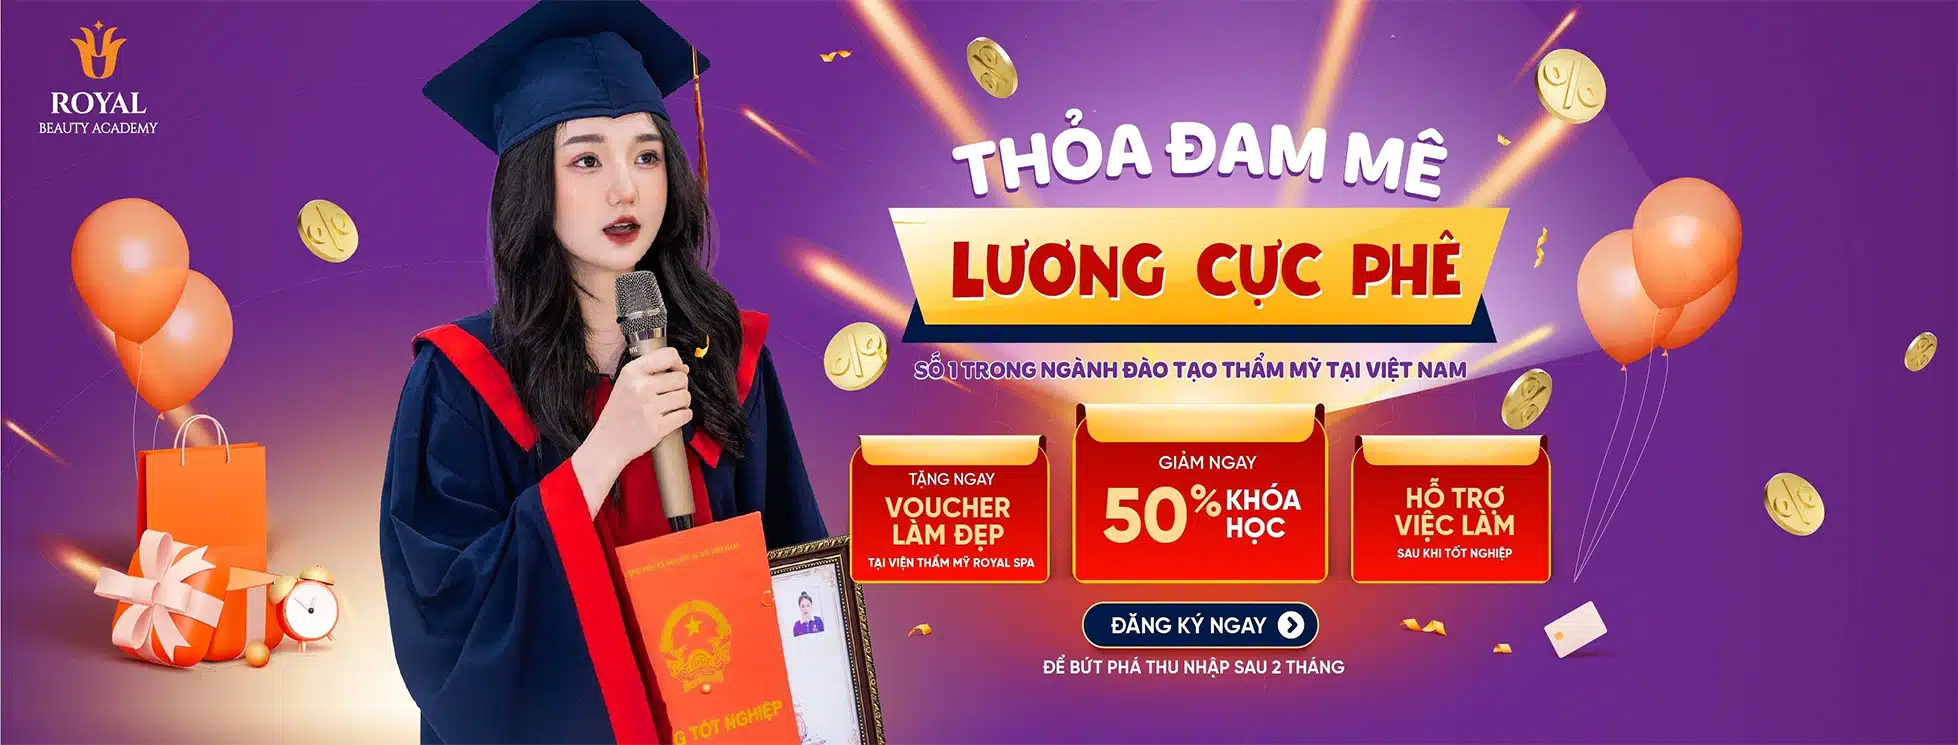 Top 10 trường dạy học phun xăm phun thêu thẩm mỹ tốt nhất TP Hồ Chí Minh   Top10tphcm